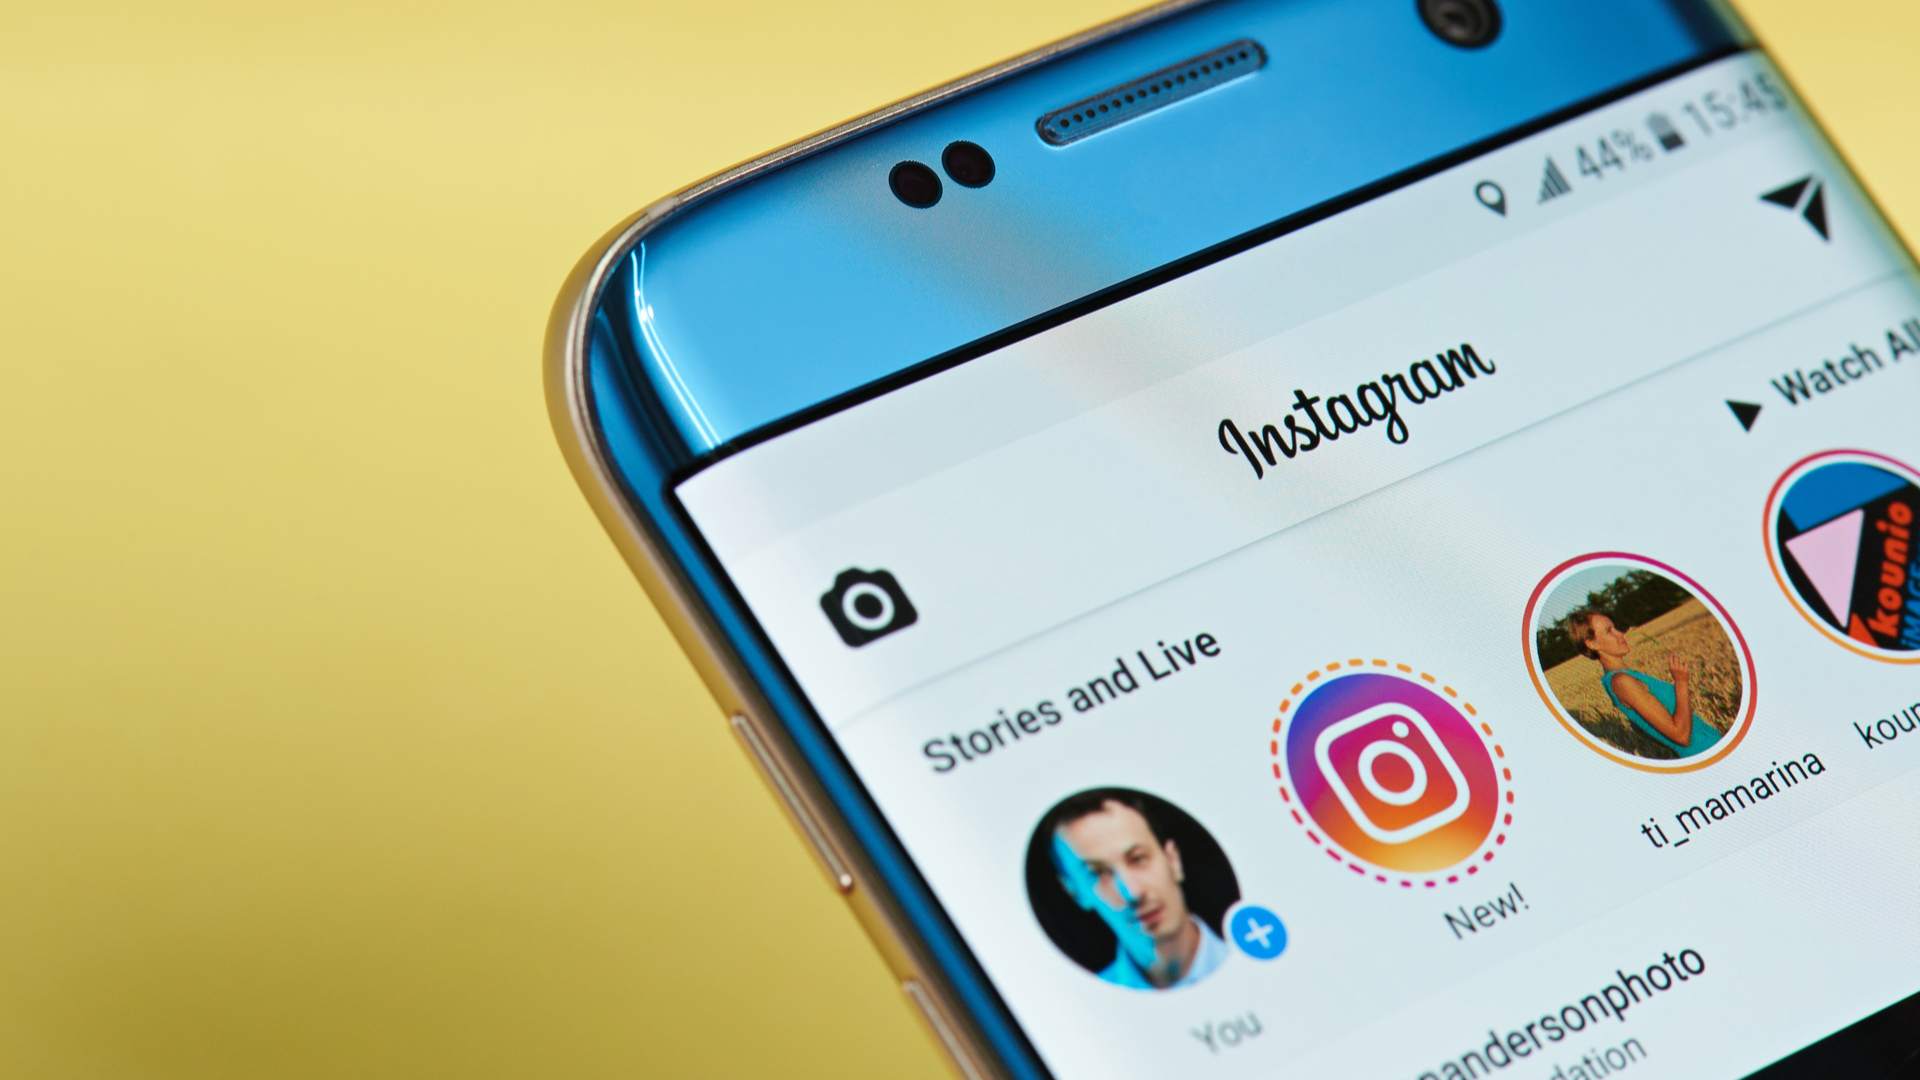 Quiz de casal do Instagram: aprenda onde achar o filtro e como